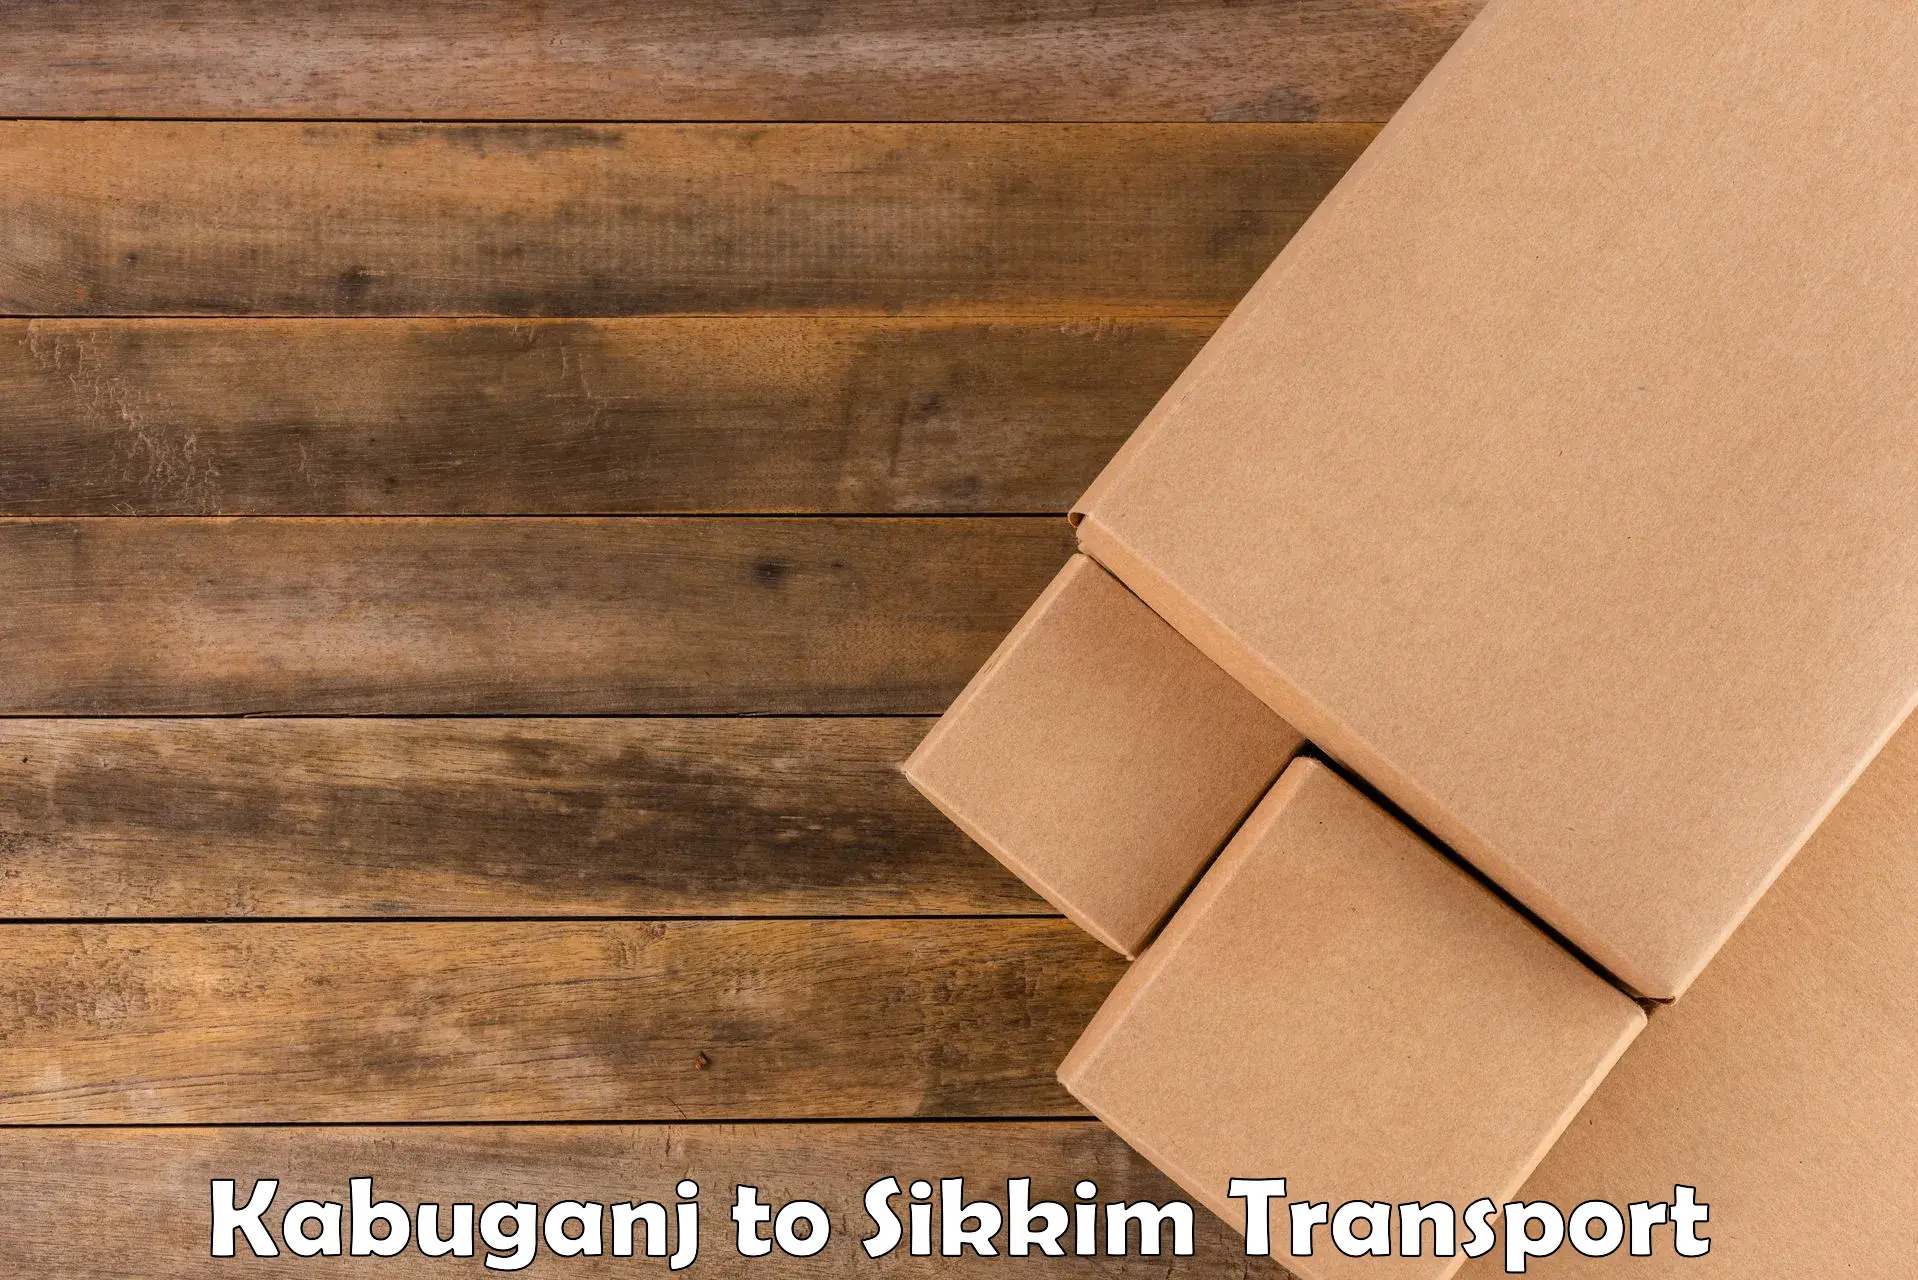 Part load transport service in India Kabuganj to Mangan